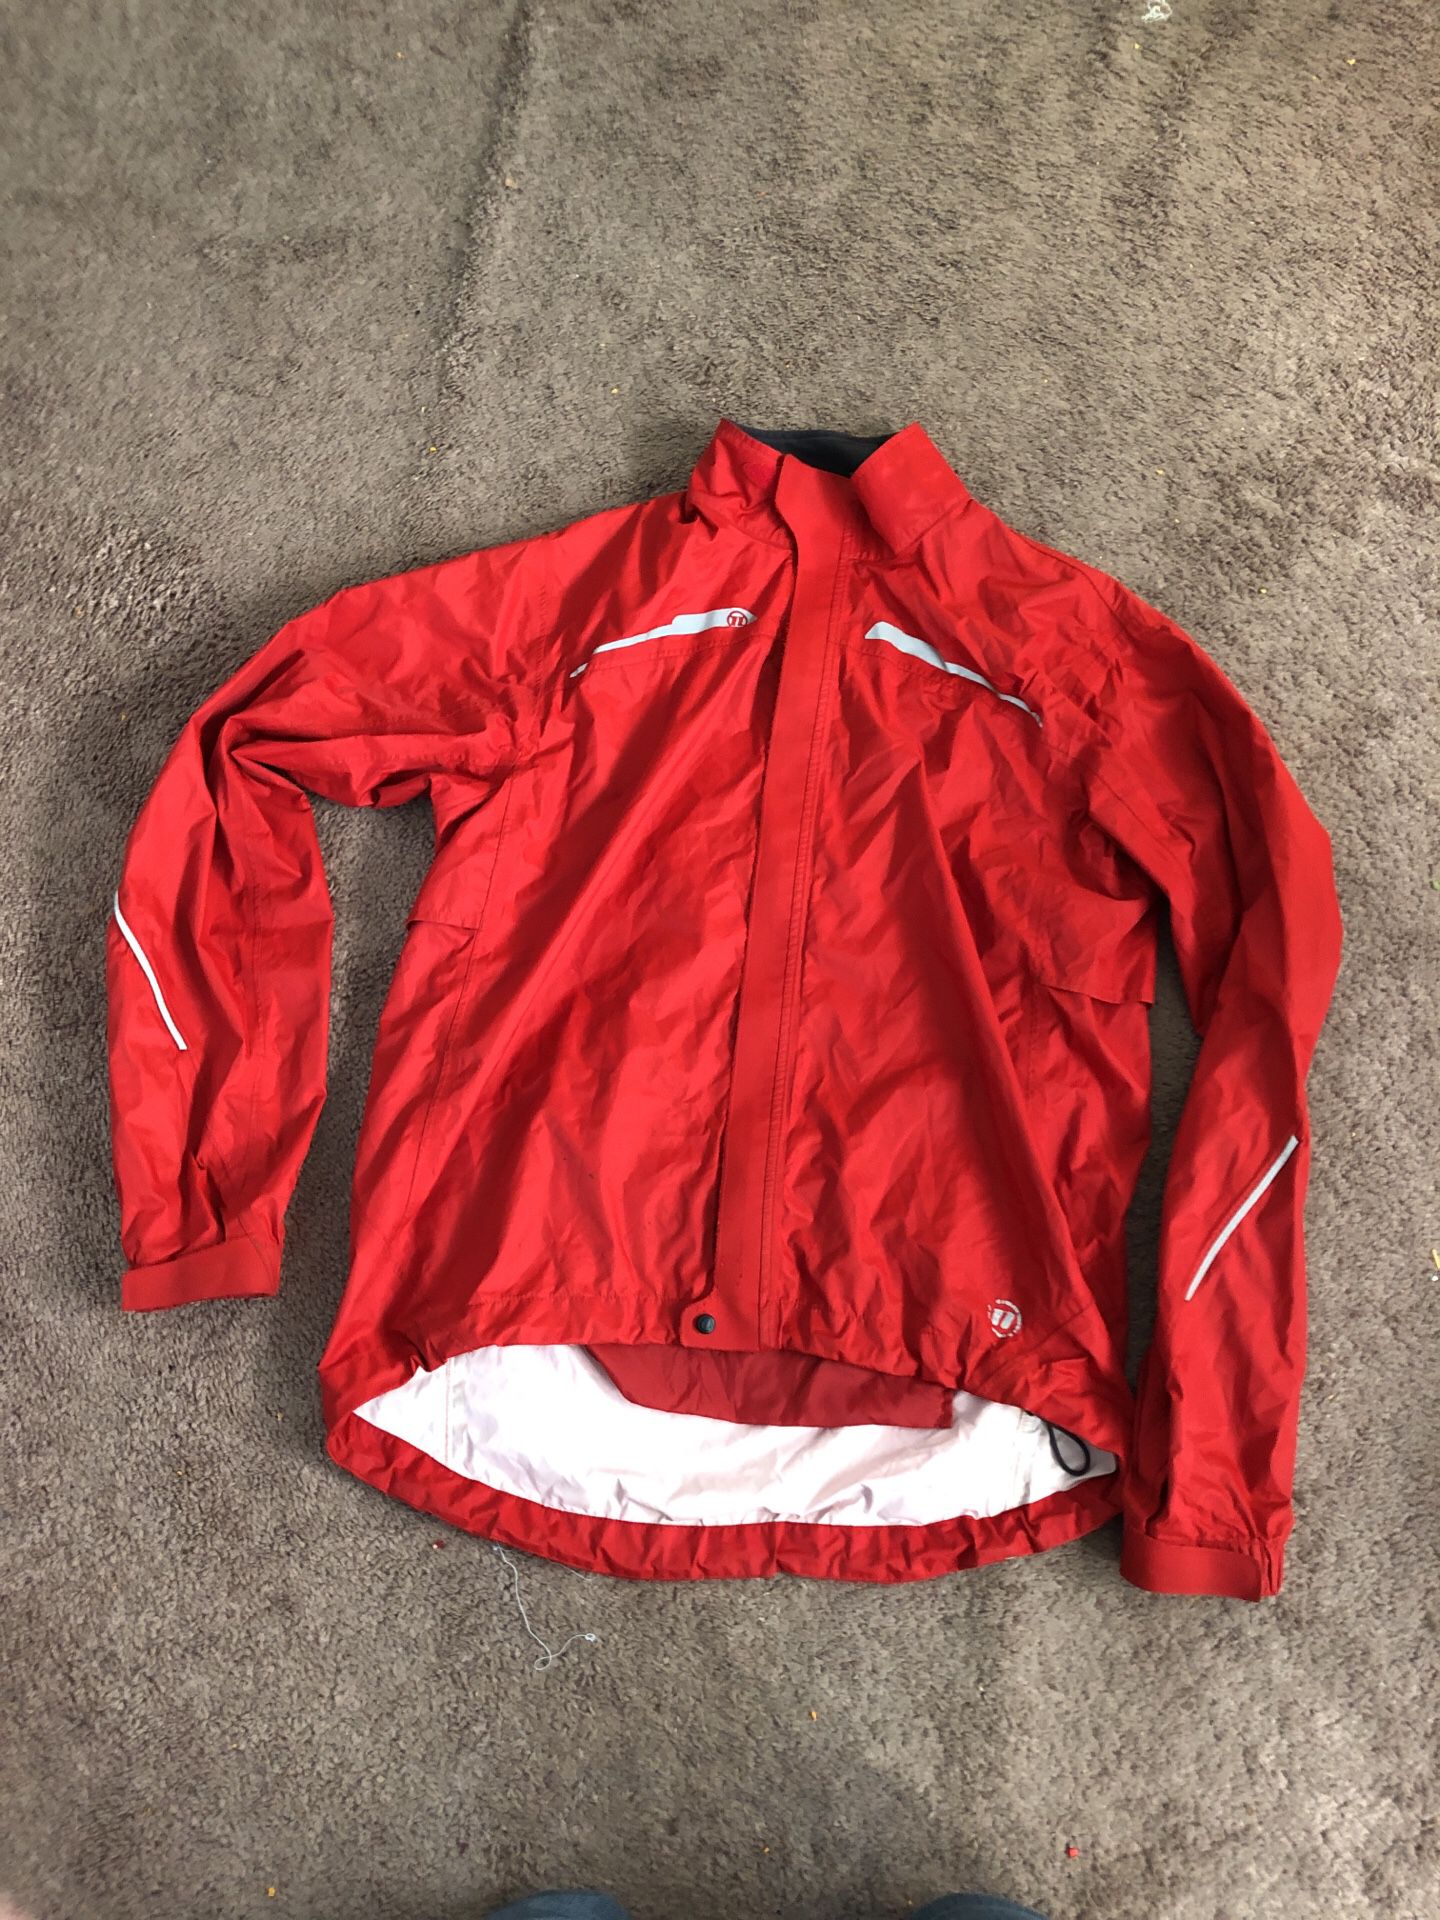 Novara rain jacket large